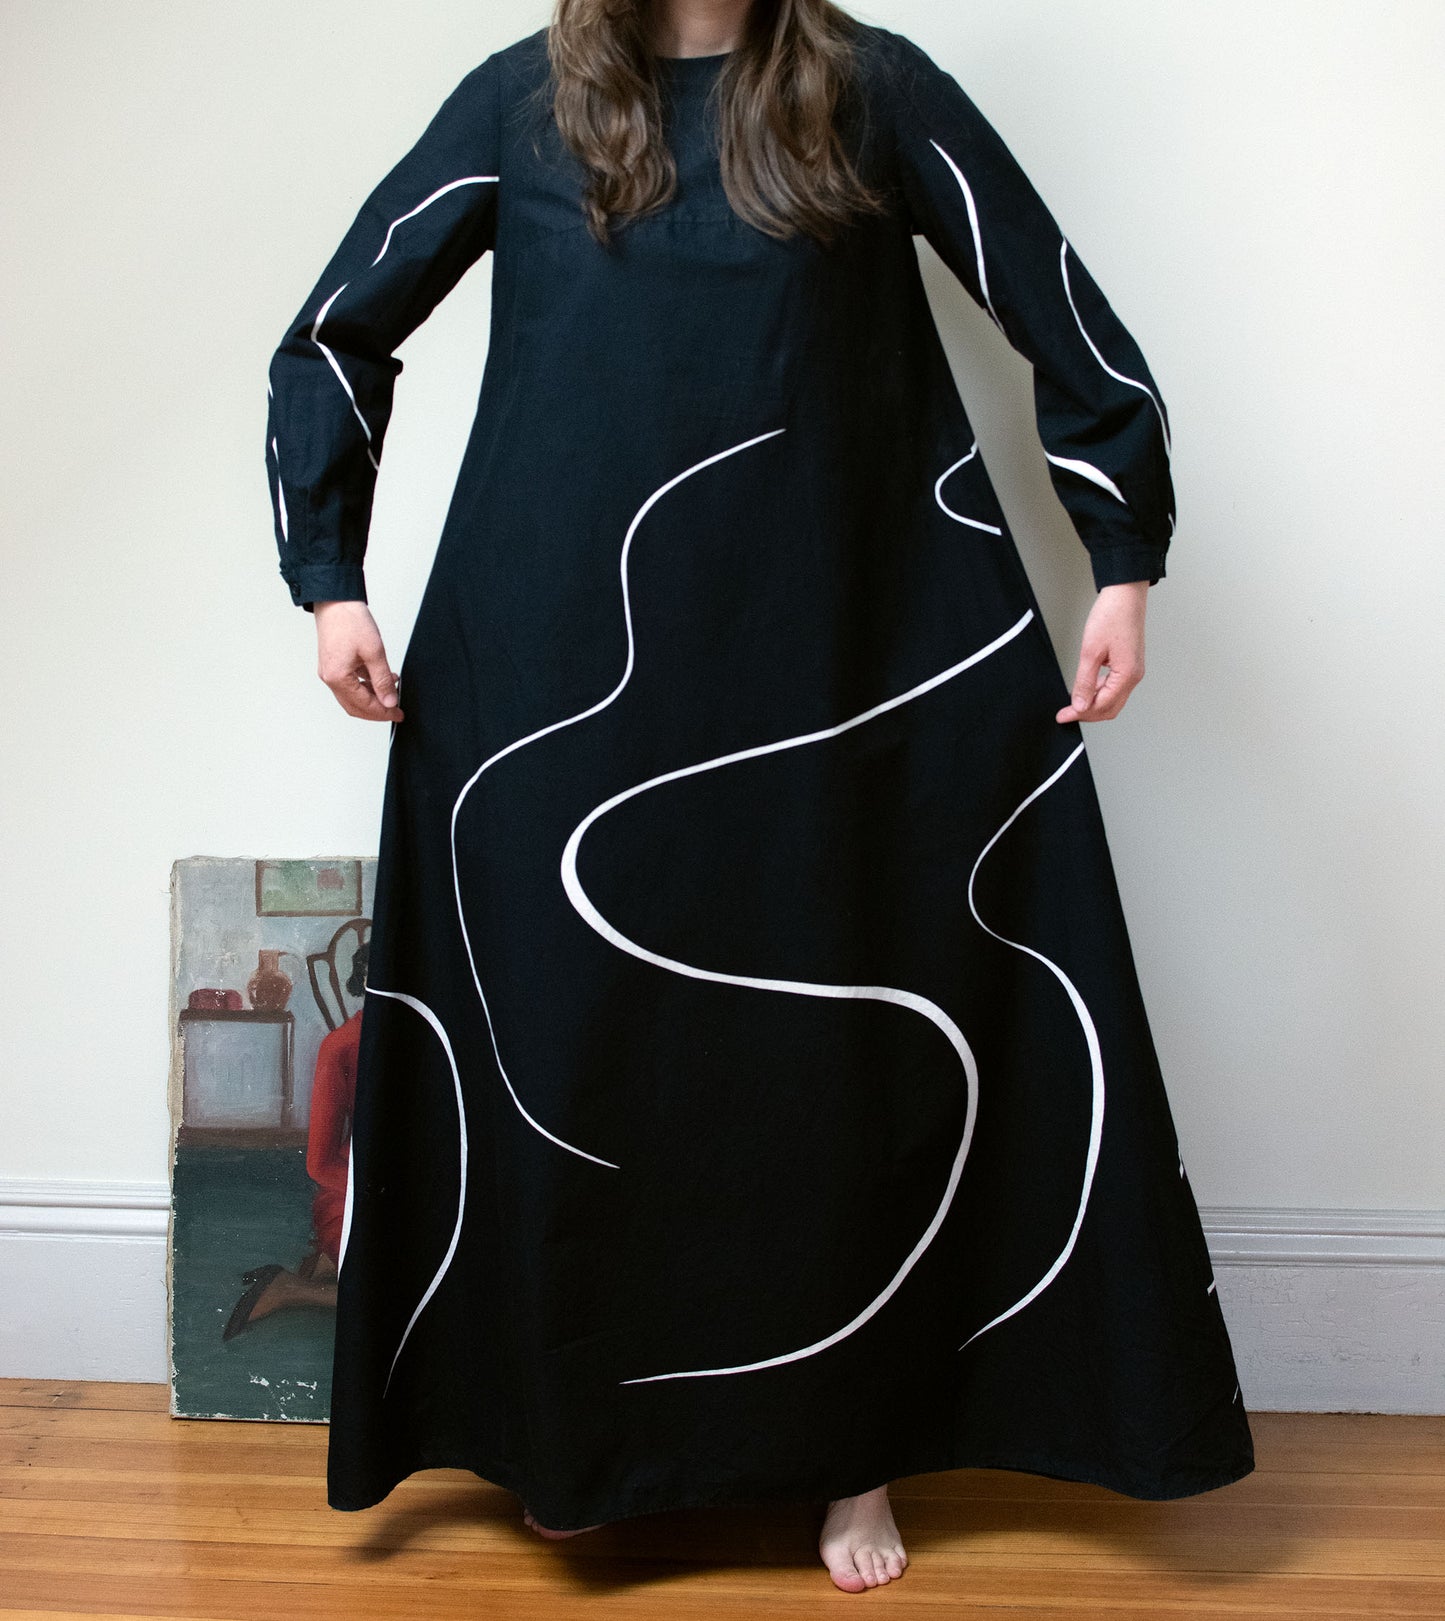 1970s Black and White Swirl Dress | Marimekko